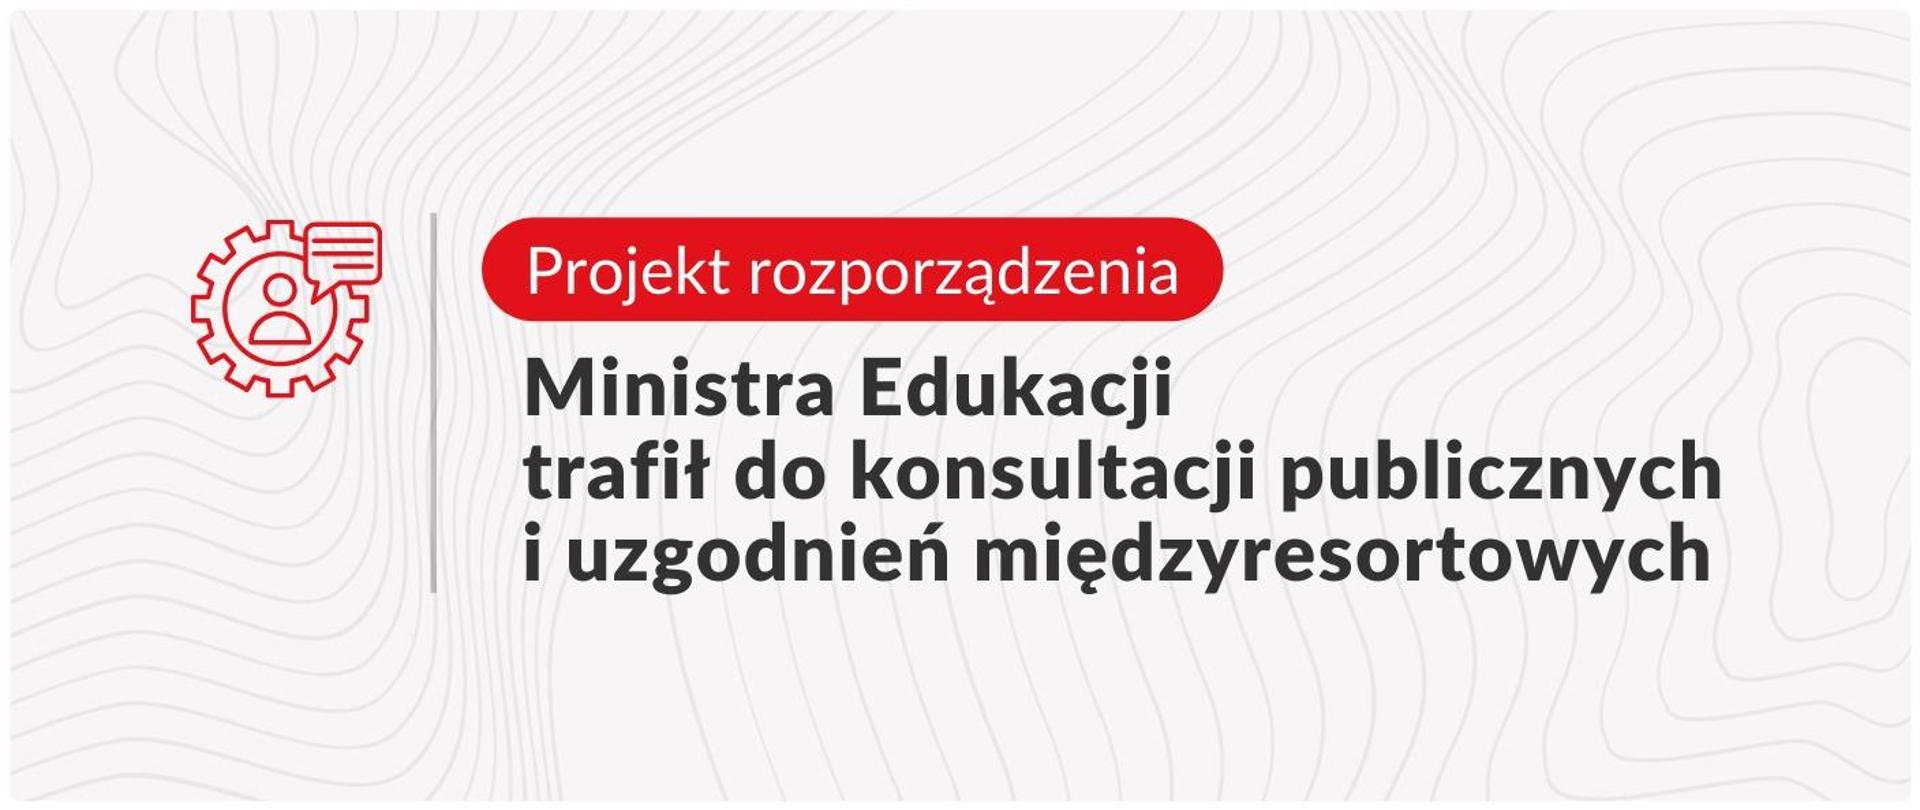 Grafika z tekstem: Projekt rozporządzenia Ministra Edukacji trafił do konsultacji publicznych i uzgodnień międzyresortowych 